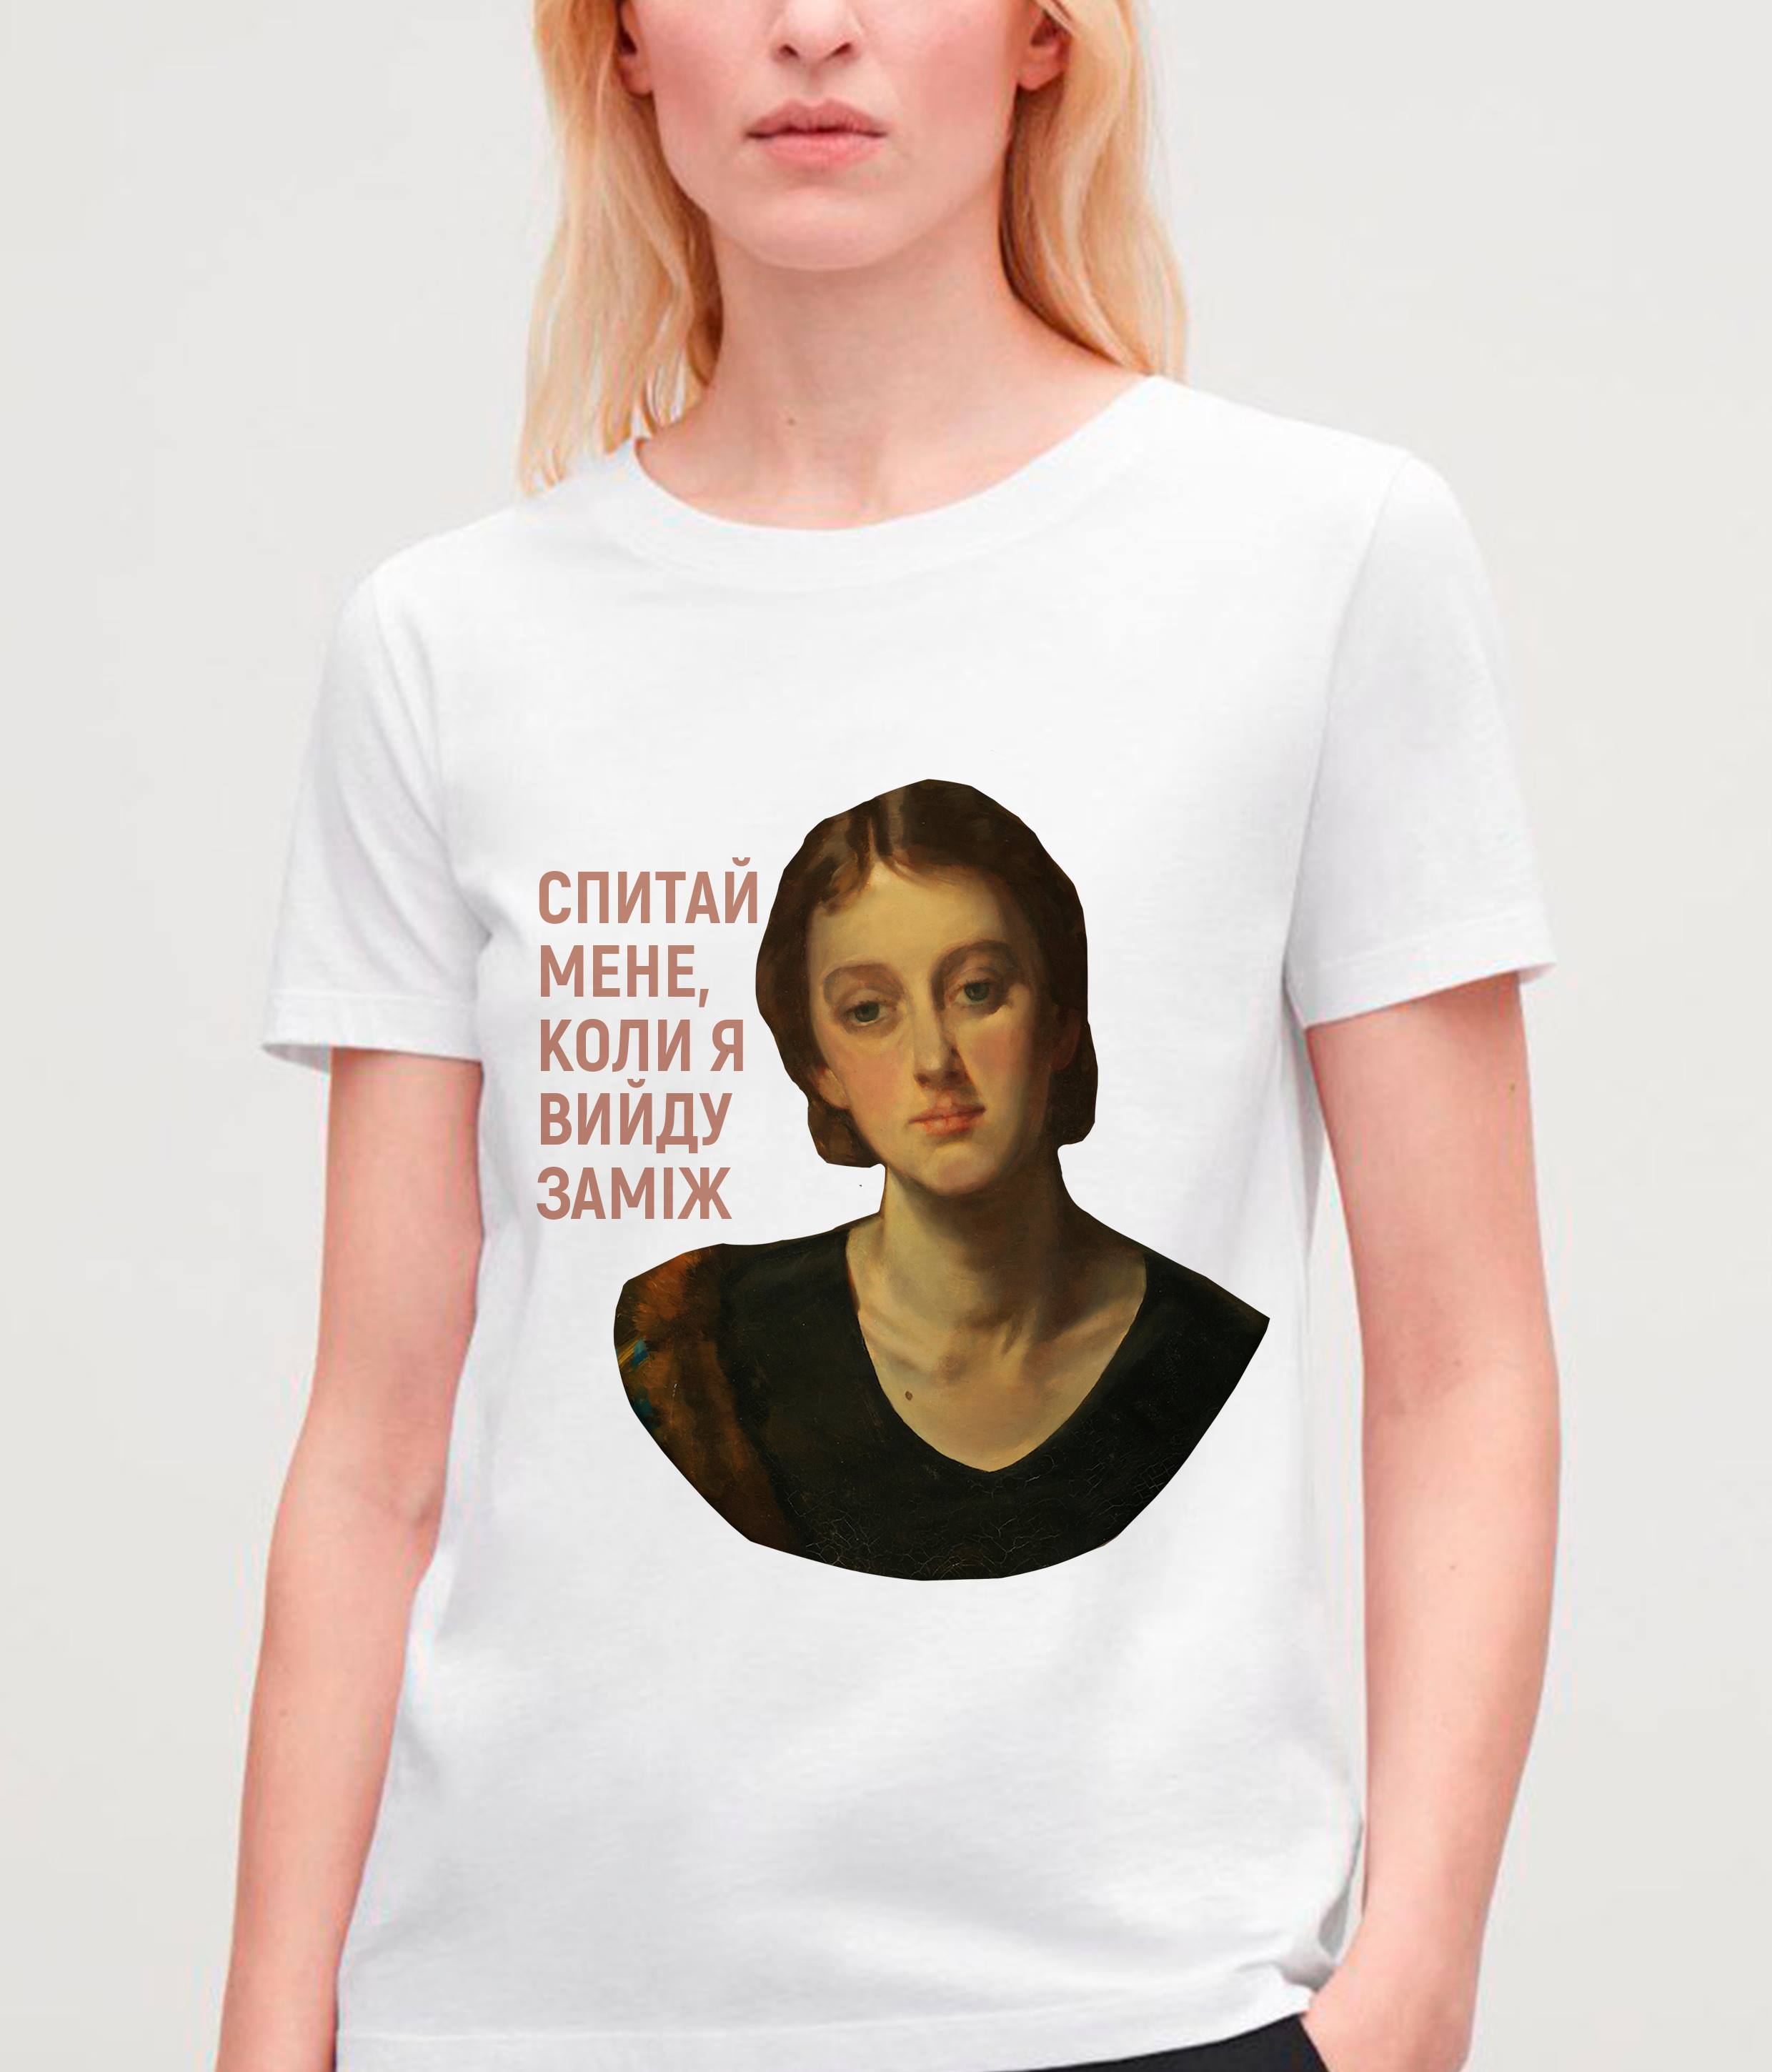 Одеський художній музей створив футболки, що руйнують стереотипи про жінок (ФОТО)